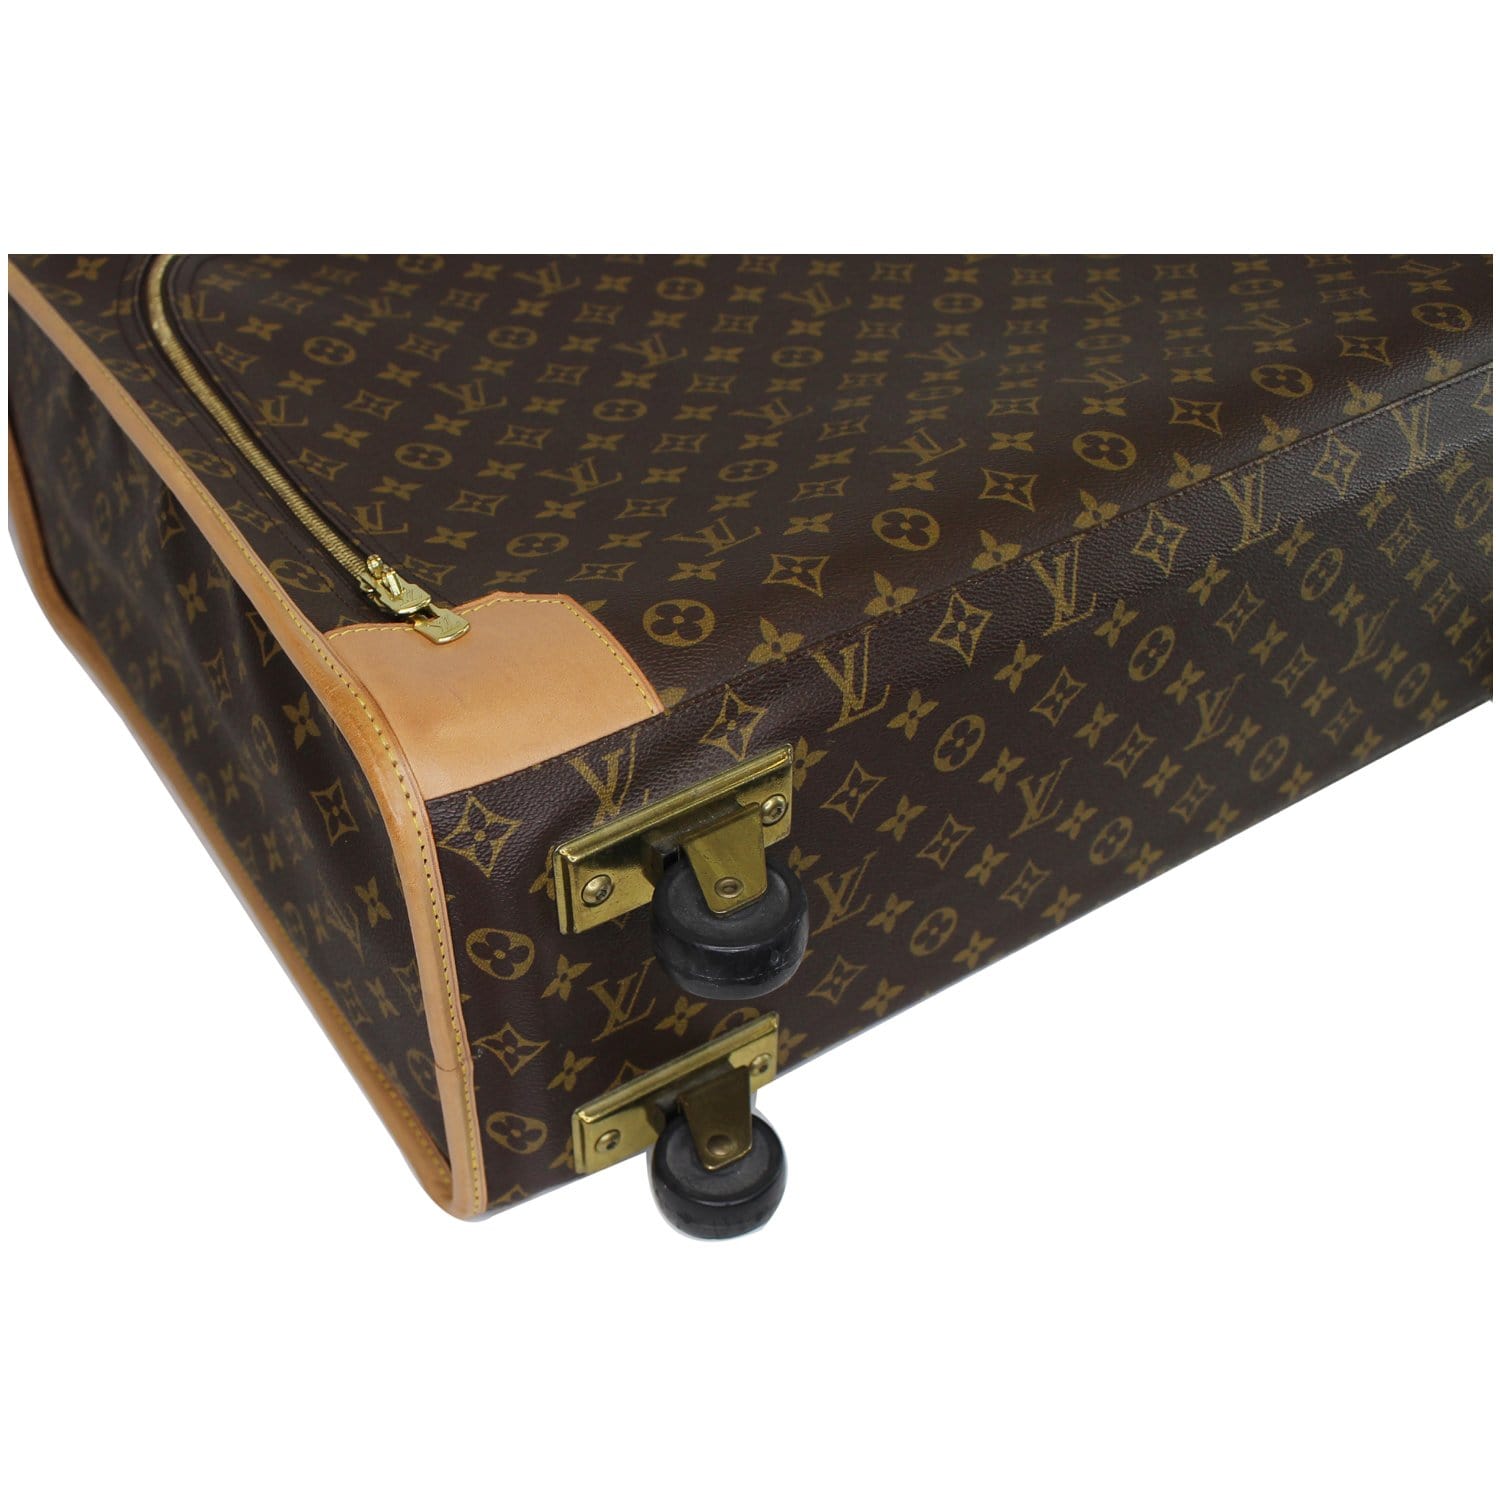 Louis Vuitton Vintage Pullman 65 Monogram Canvas Suitcase